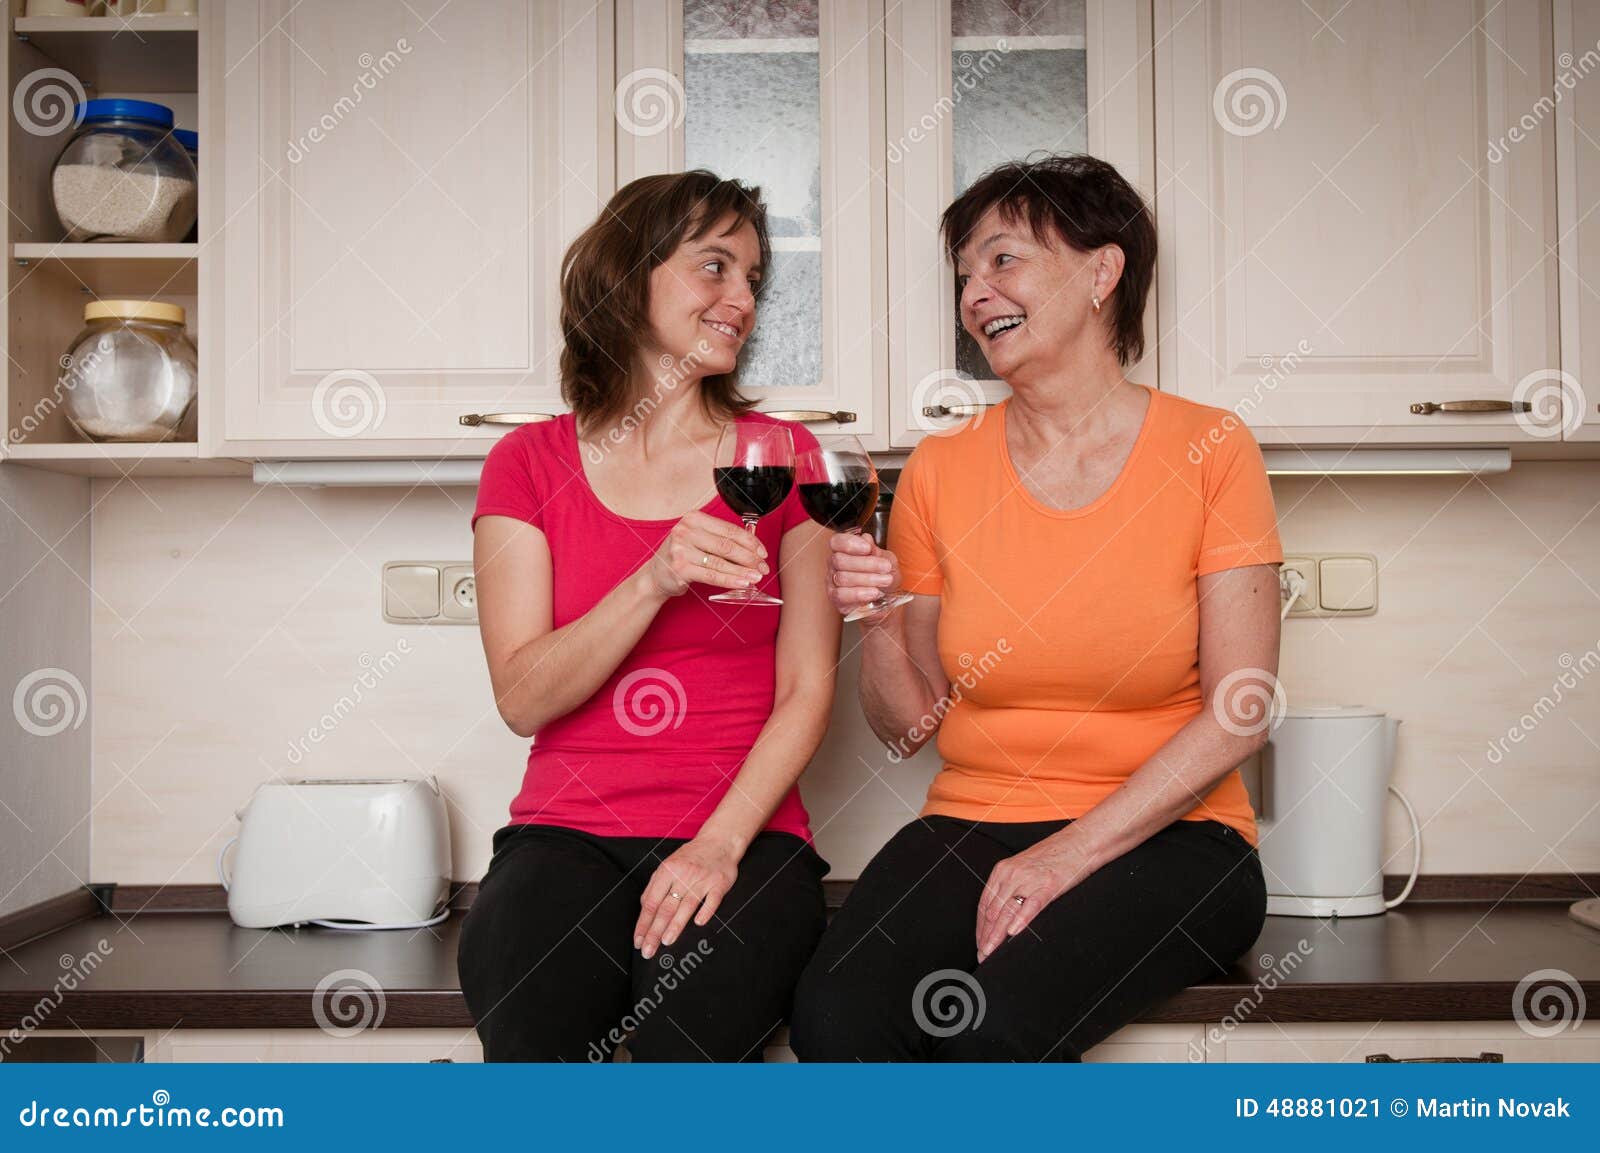 Грязные разговоры на кухне. Мама и дочь разговаривают на кухне. Мать выпивает с дочерью. Мама с дочкой пьют. Мама с дочкой вино.